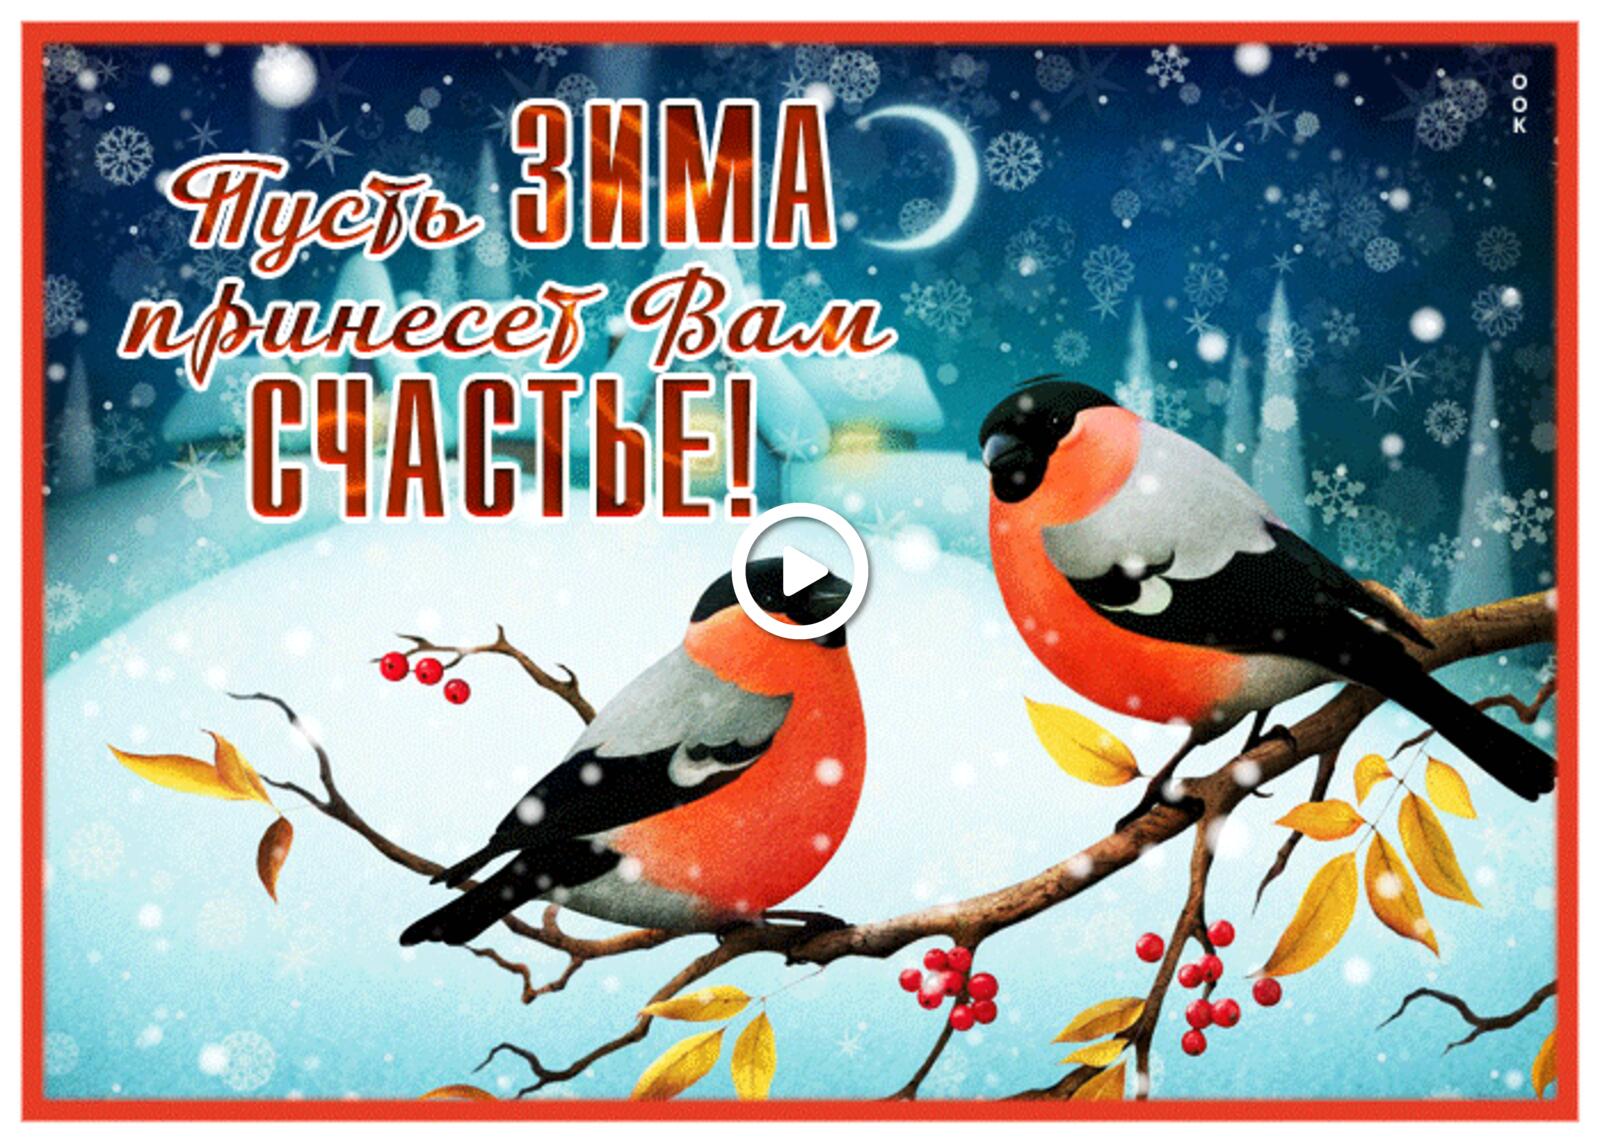 一张以愿冬天带给你幸福 金翅雀 鸟类为主题的明信片